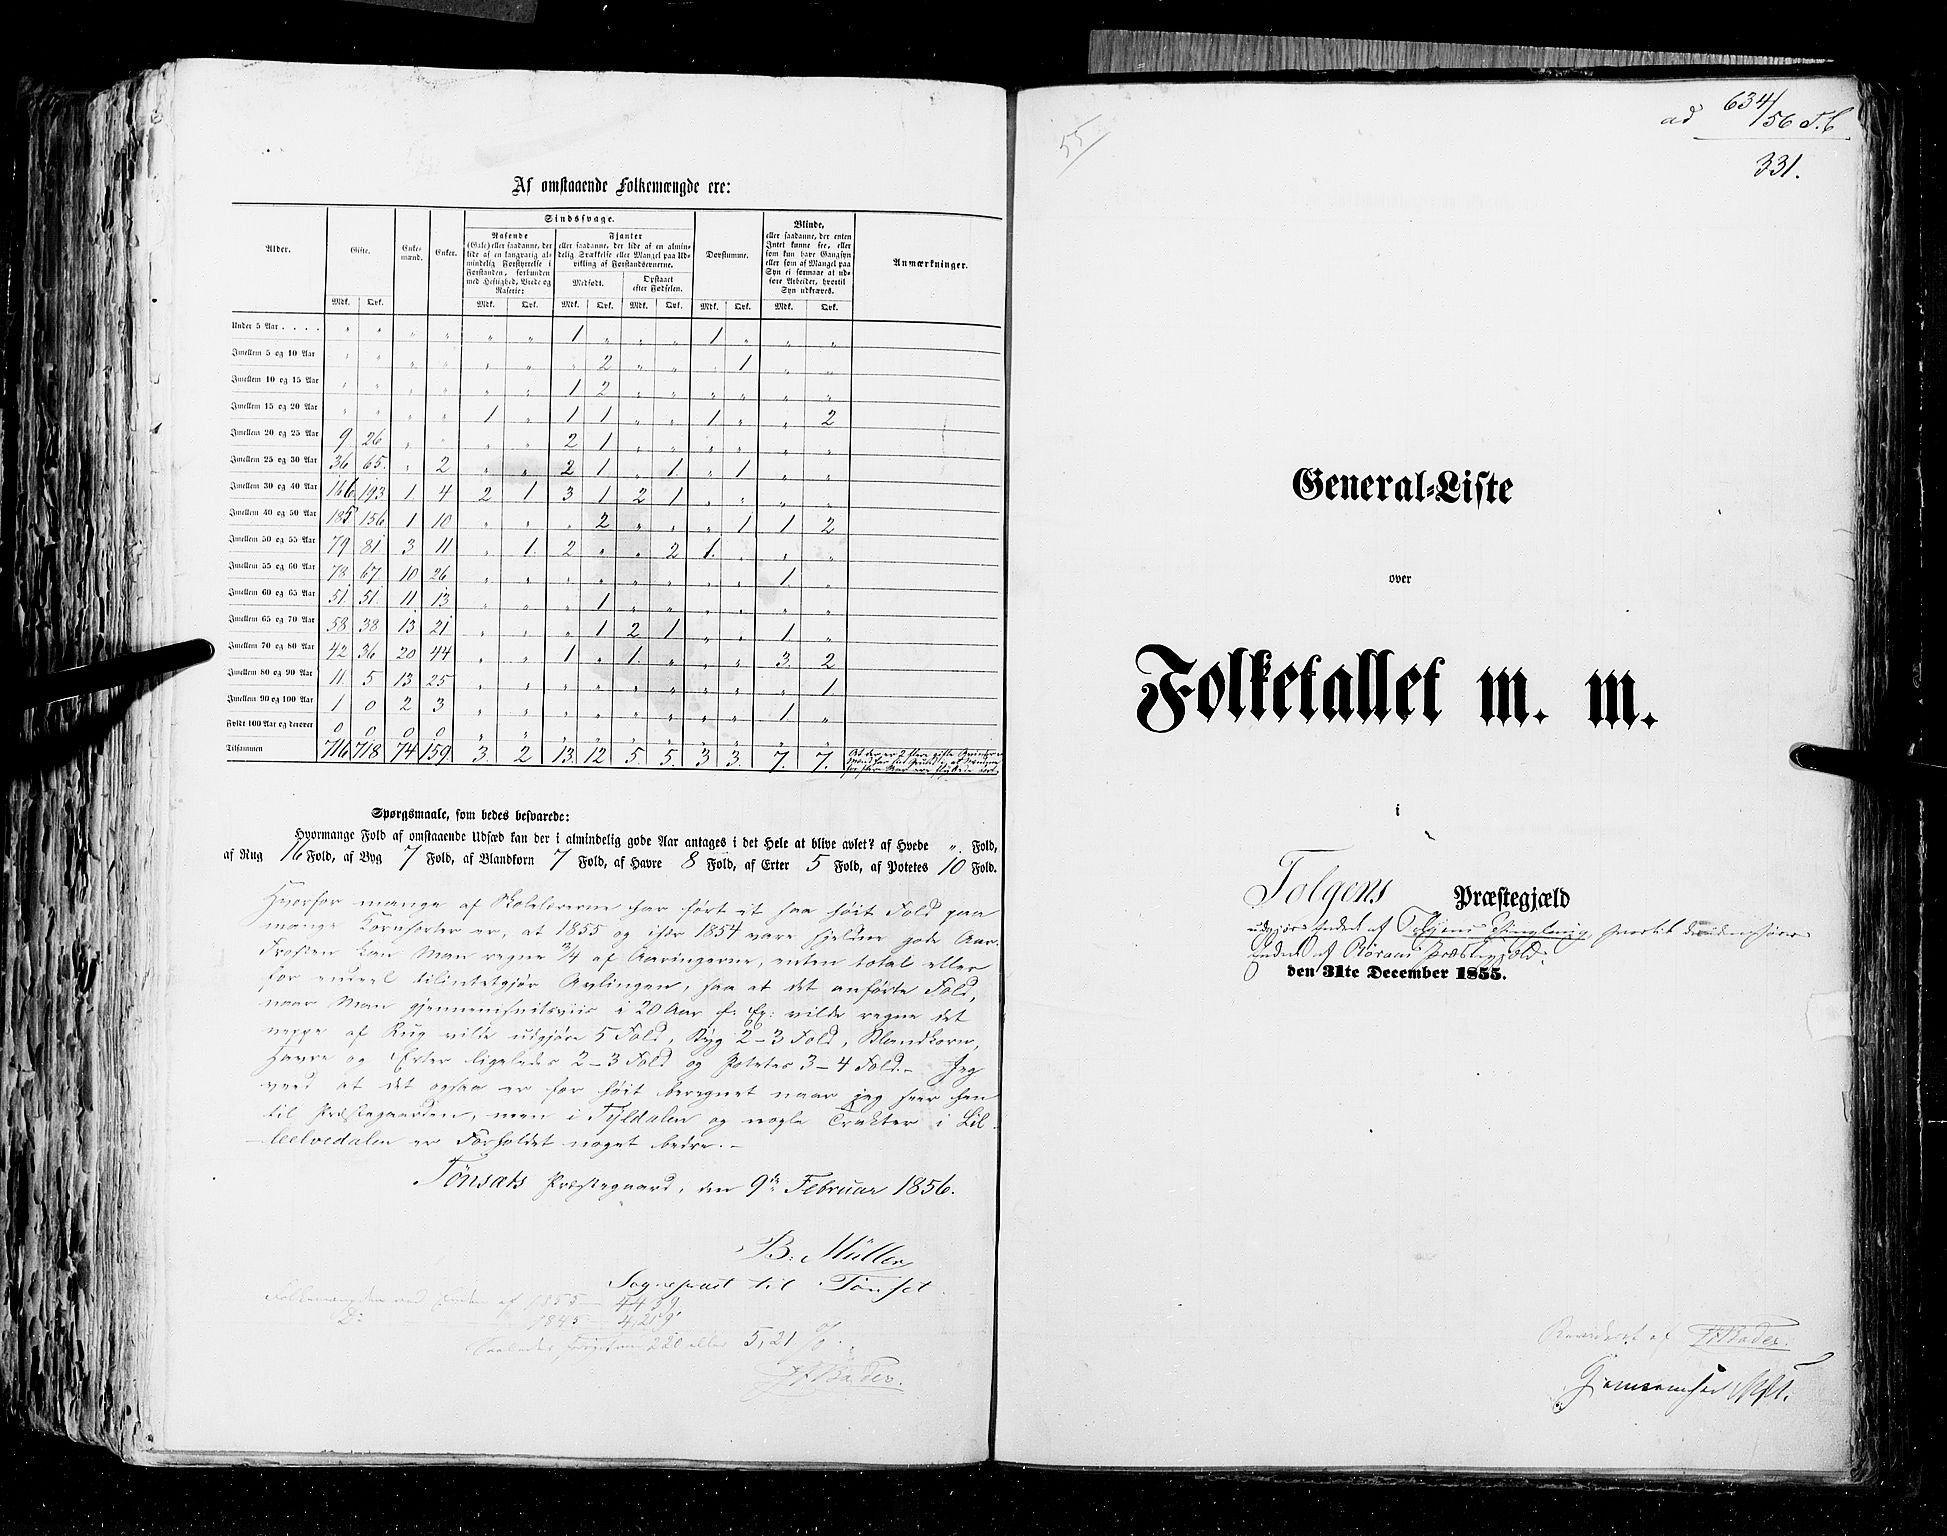 RA, Folketellingen 1855, bind 1: Akershus amt, Smålenenes amt og Hedemarken amt, 1855, s. 331